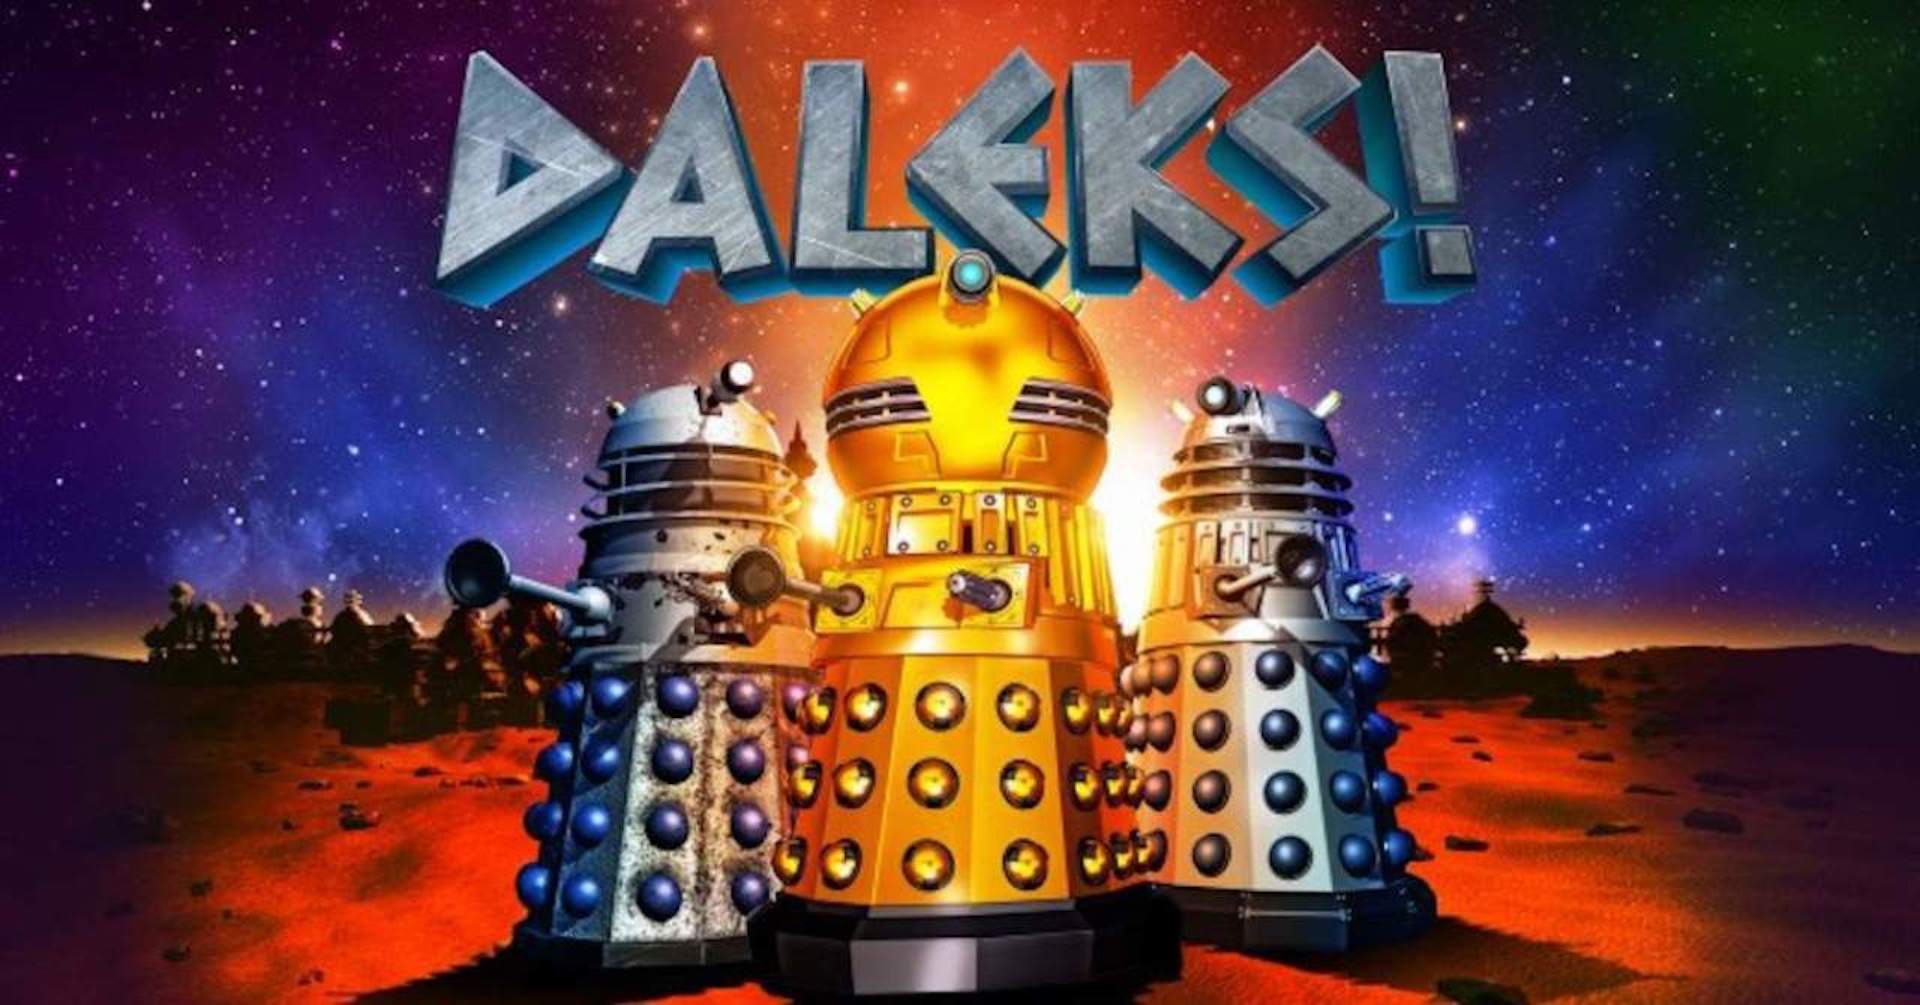 Daleks Animated